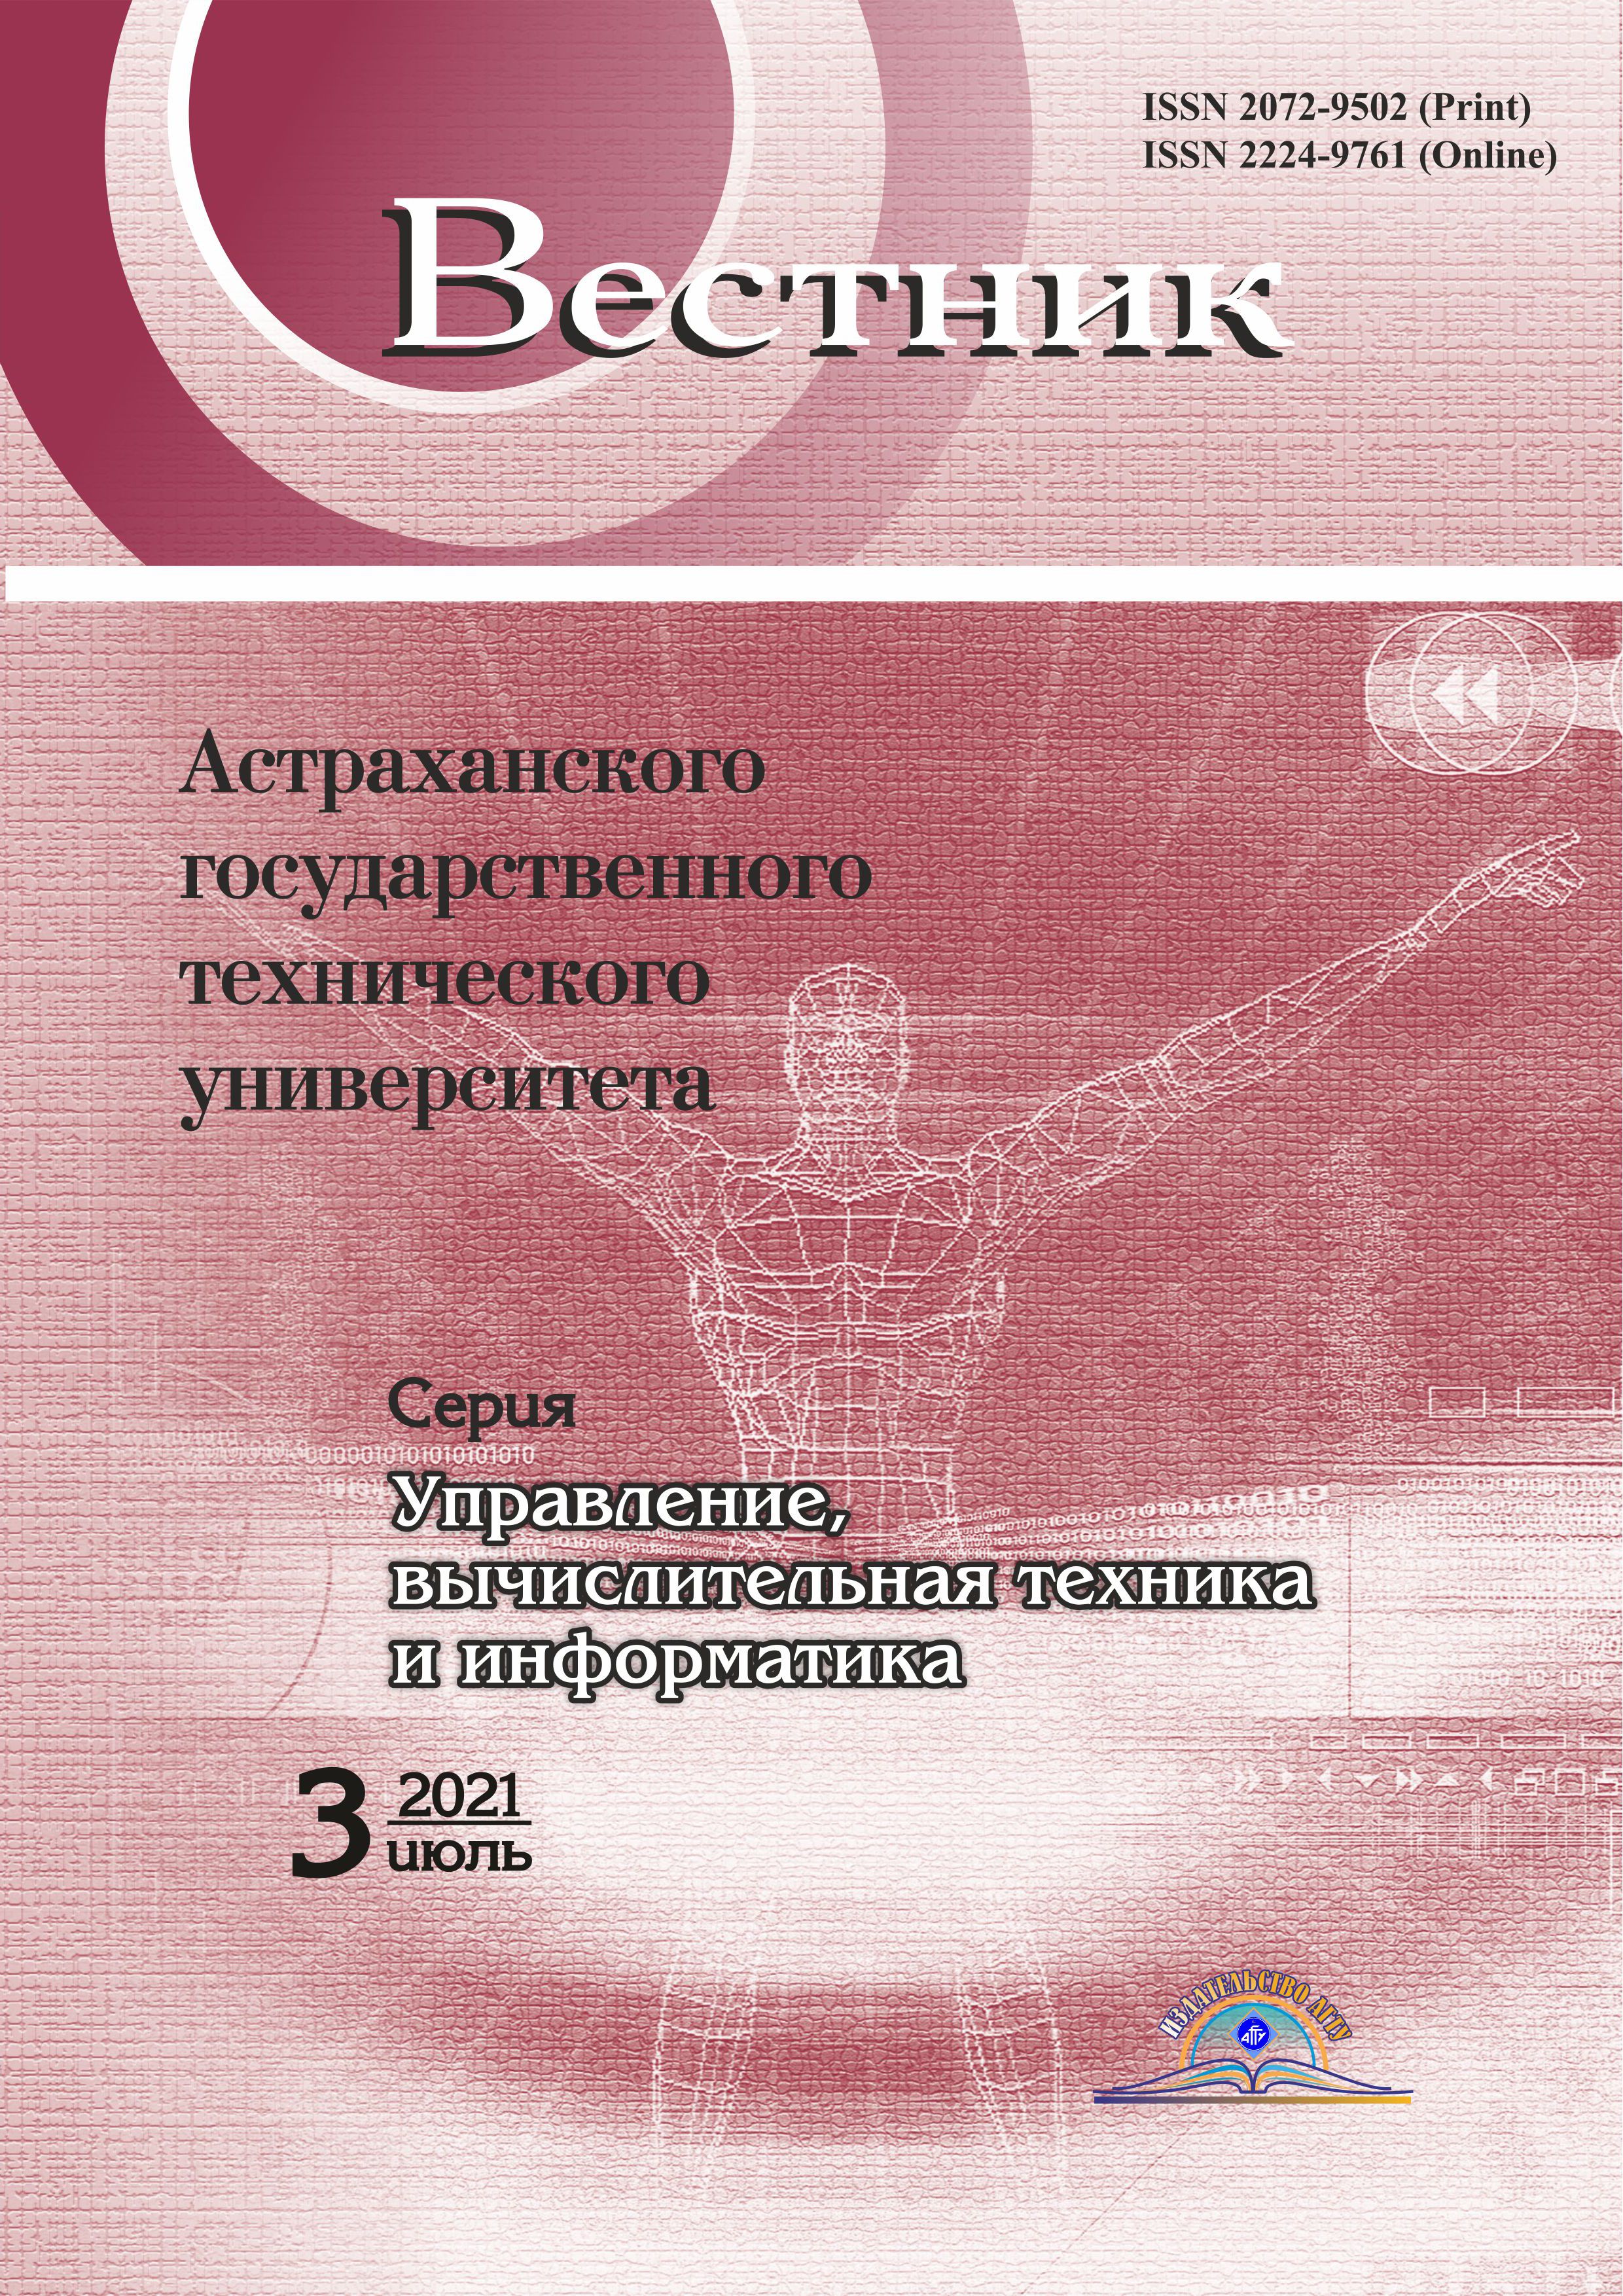             Вестник Астраханского государственного технического университета. Серия: Управление, вычислительная техника и информатика
    